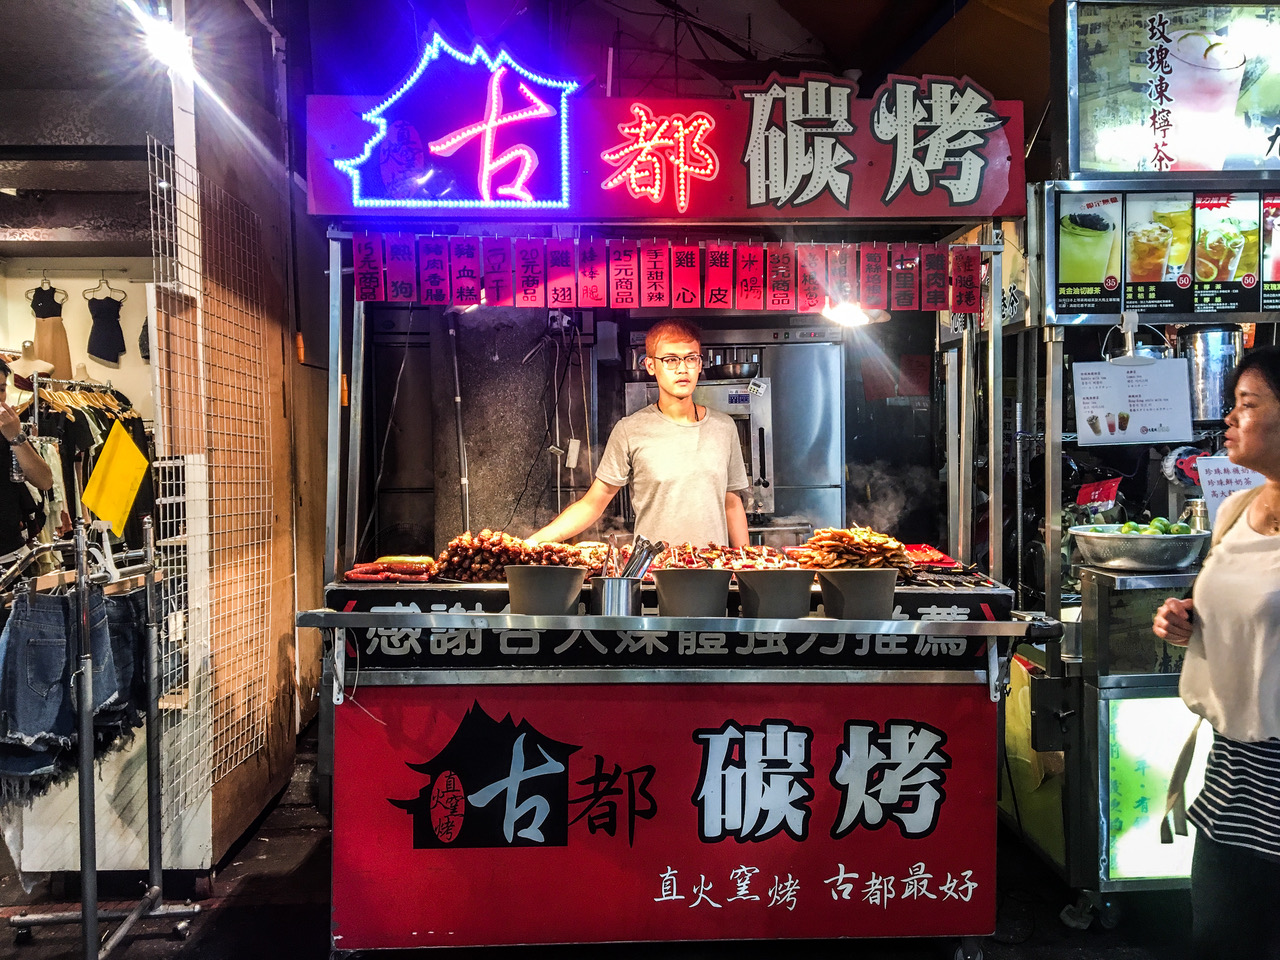 Visiter Taipei et manger dans les marchés de nuit